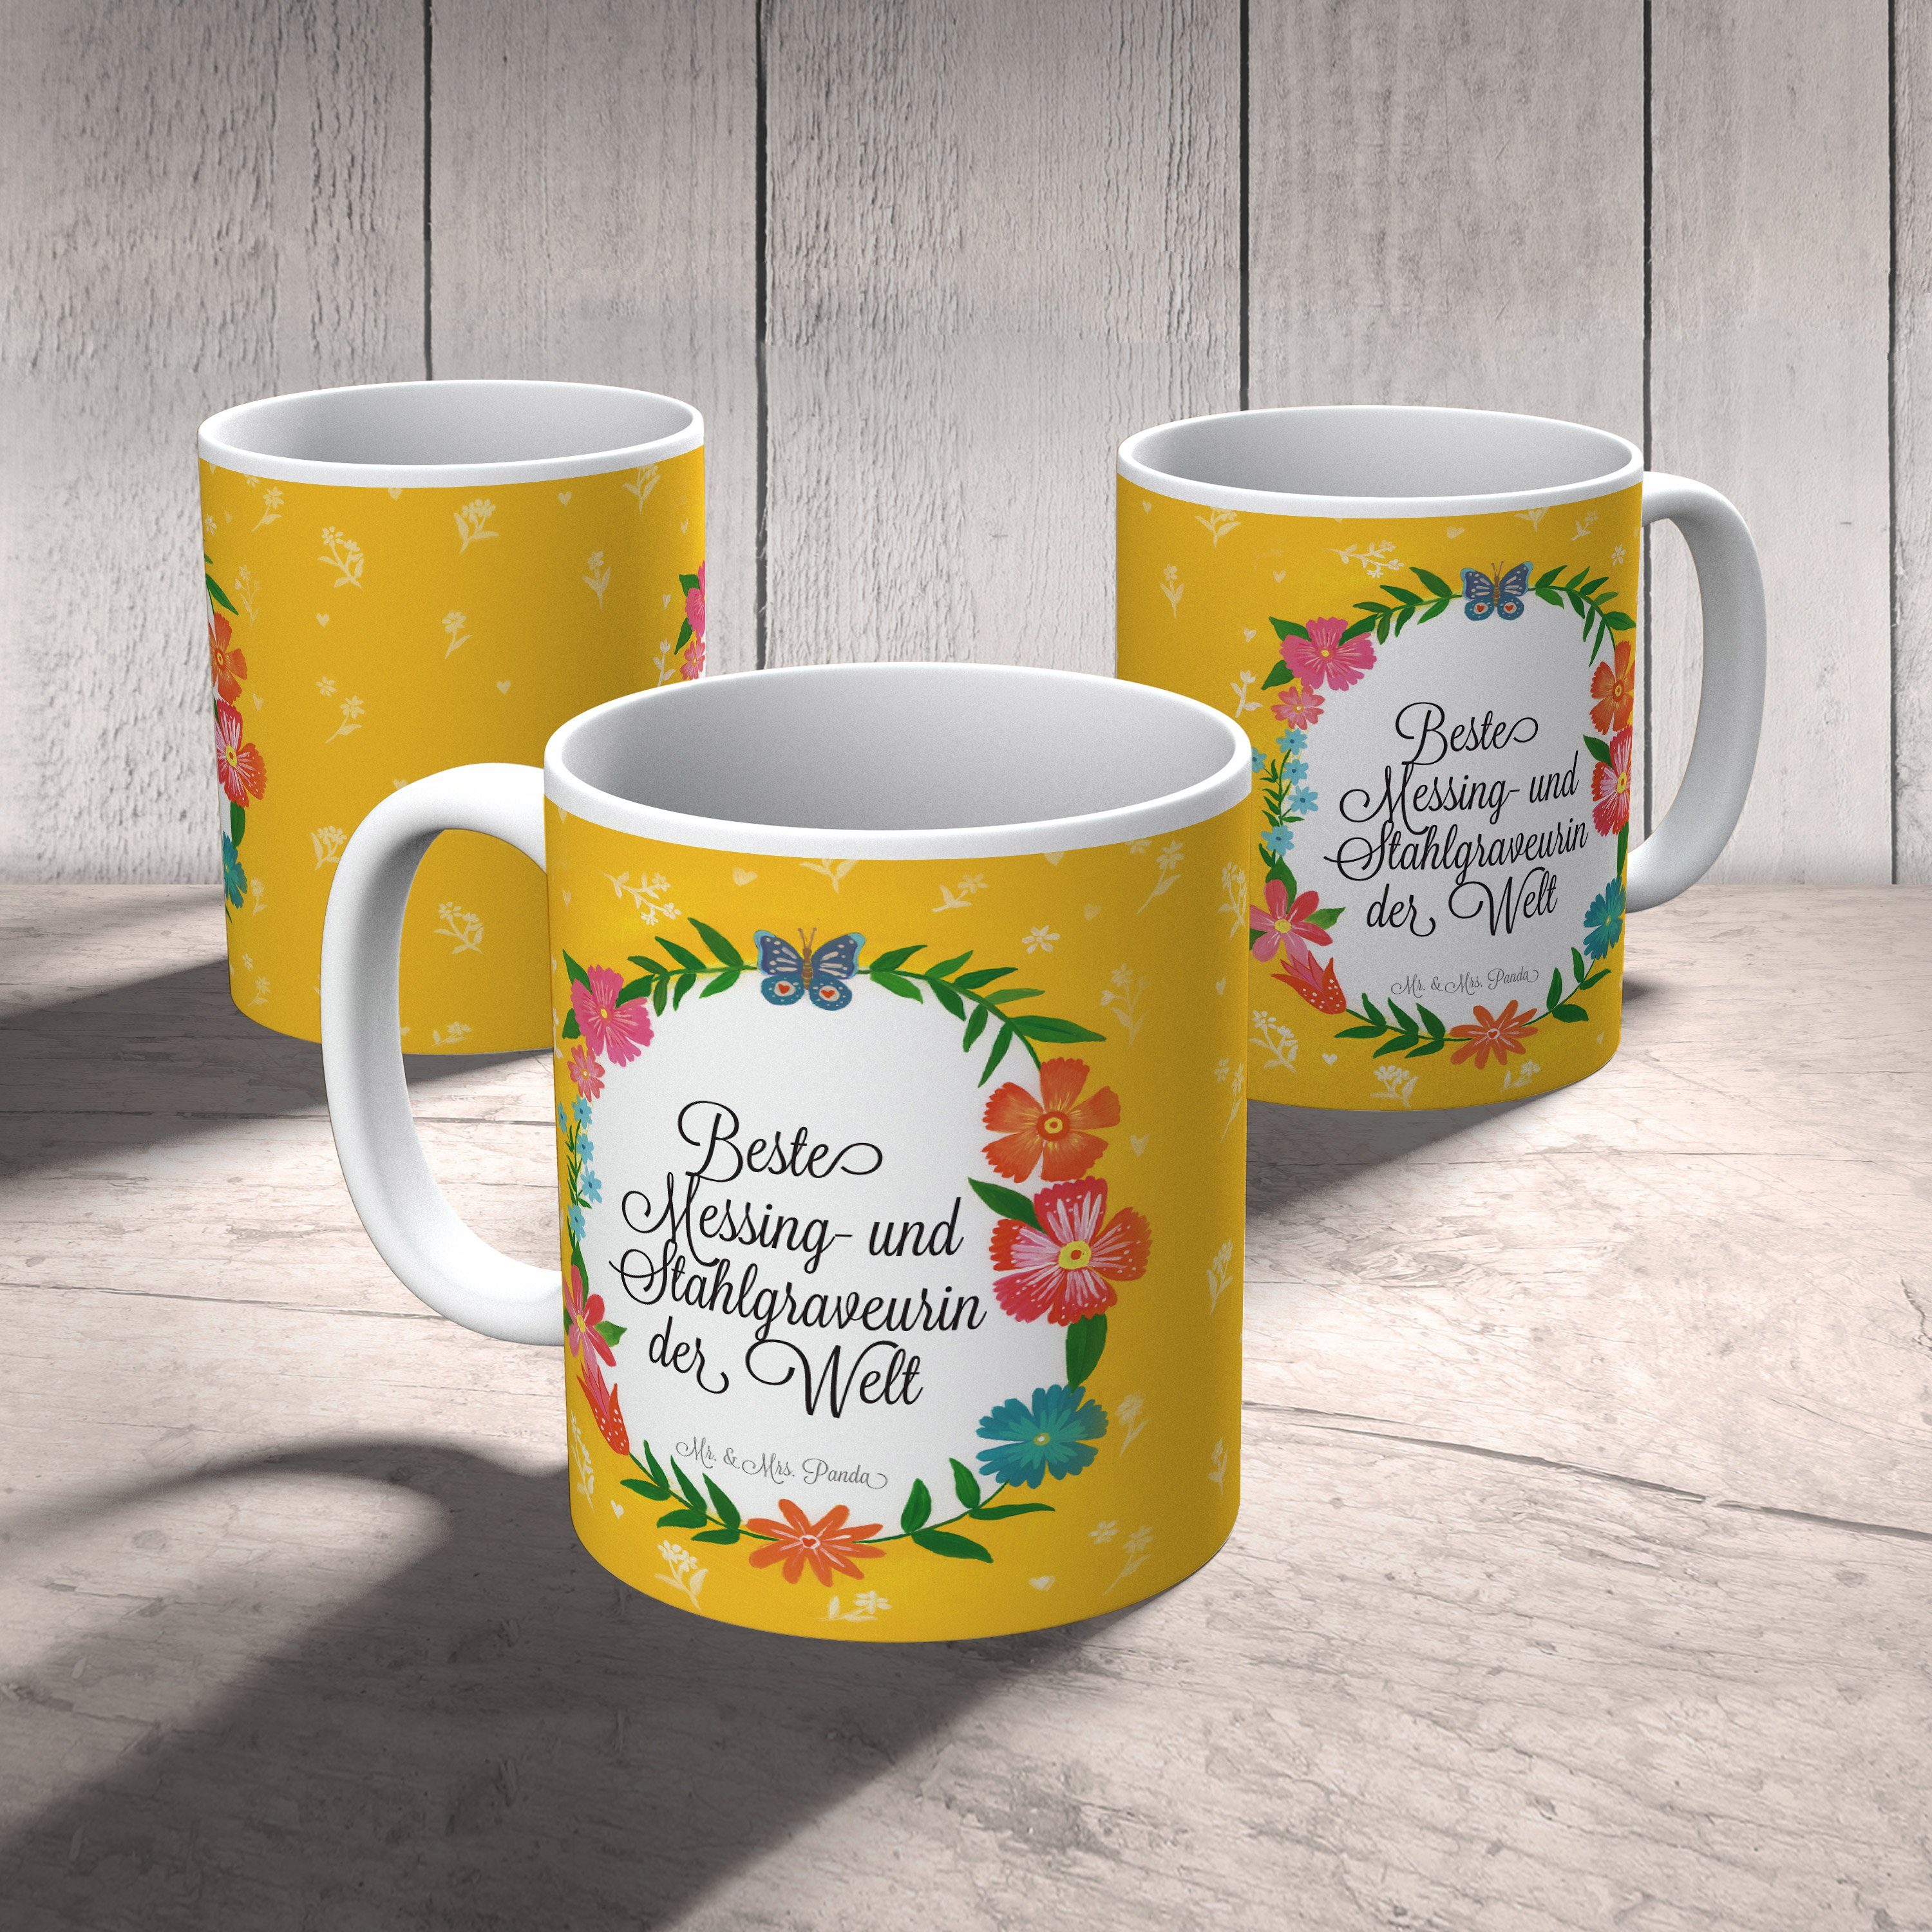 Keramik - Geschenk, Schenken, & Mr. Kaffee, Messing- Stahlgraveurin Tasse Panda Mrs. Gratulation, und